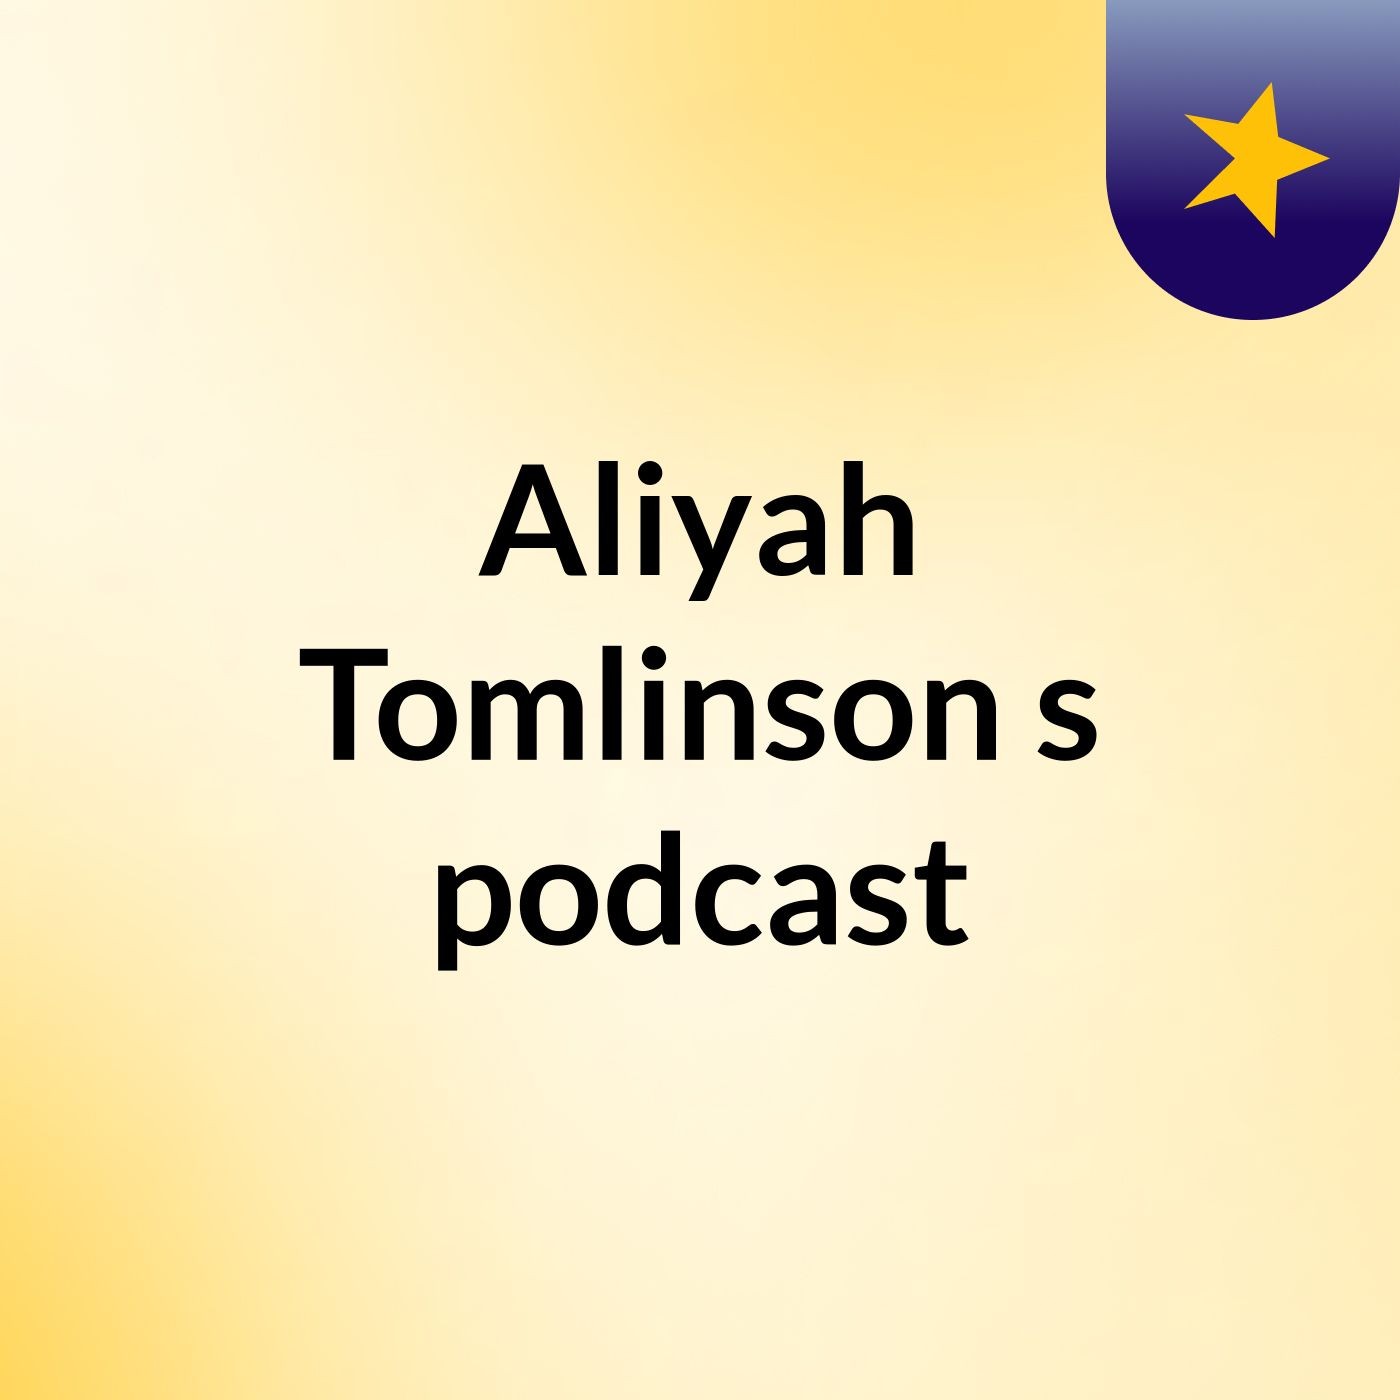 Aliyah Tomlinson's podcast